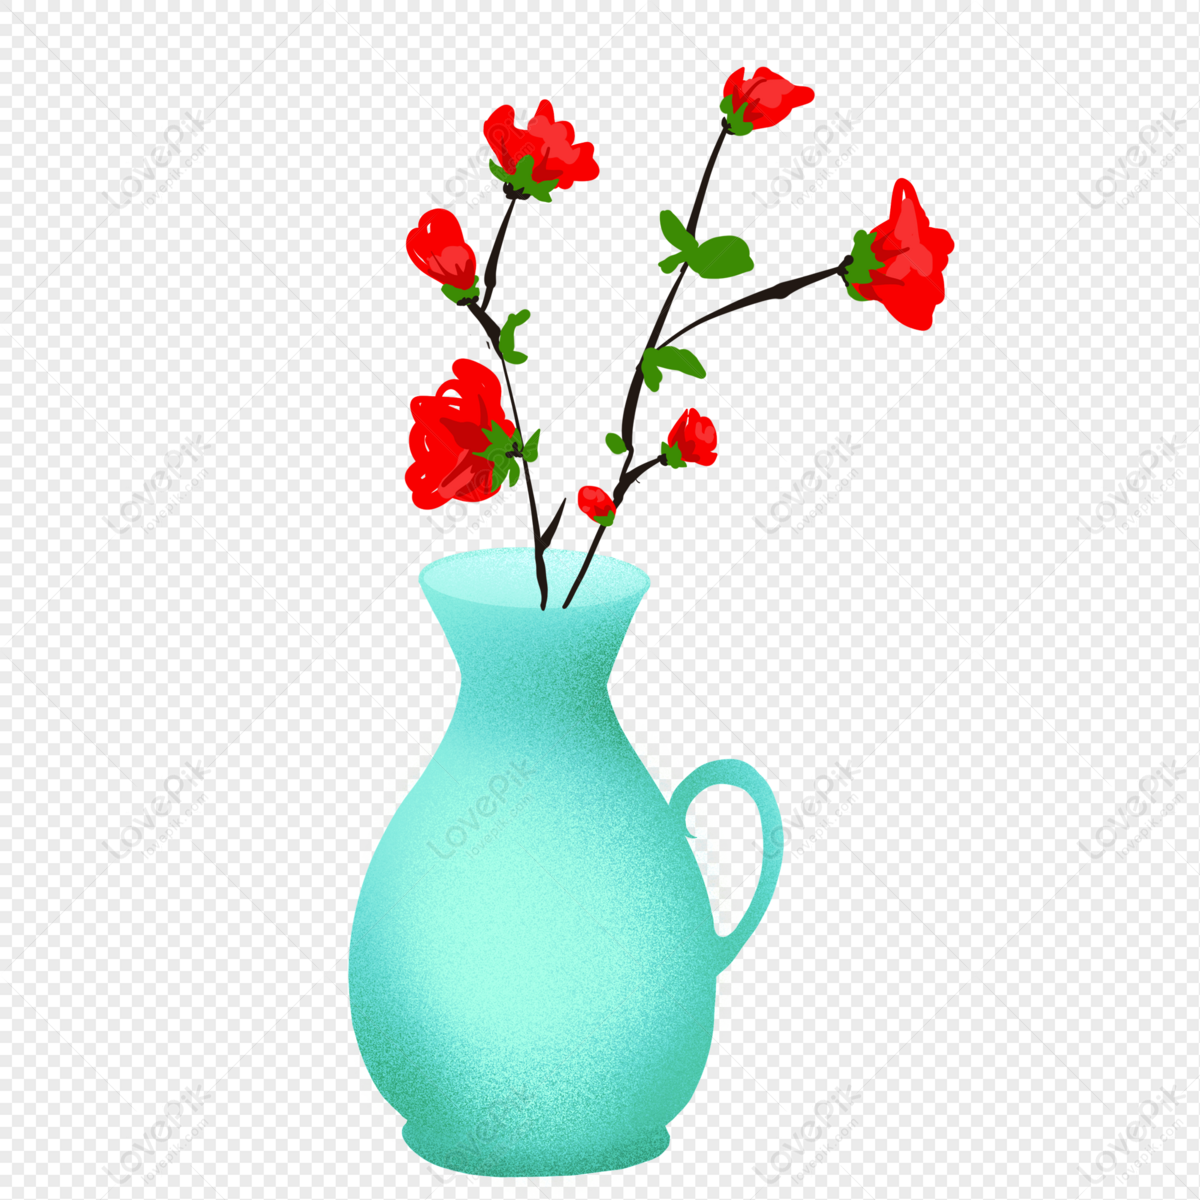 Cartoon Flower Arrangement Vase Illustration PNG Image And Clipart Image  For Free Download - Lovepik | 401531728